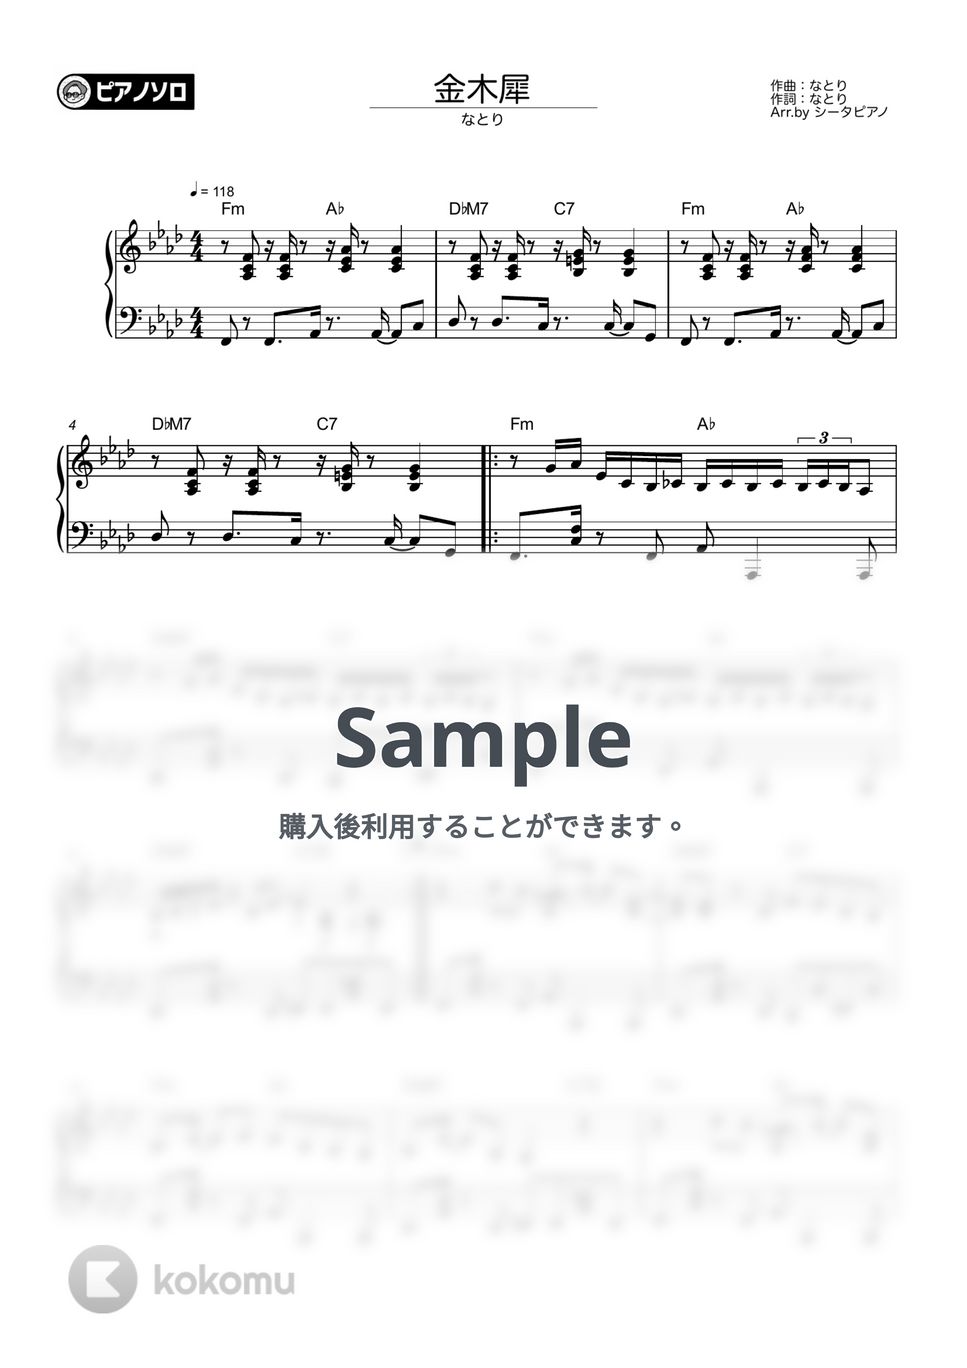 なとり - 金木犀 by シータピアノ